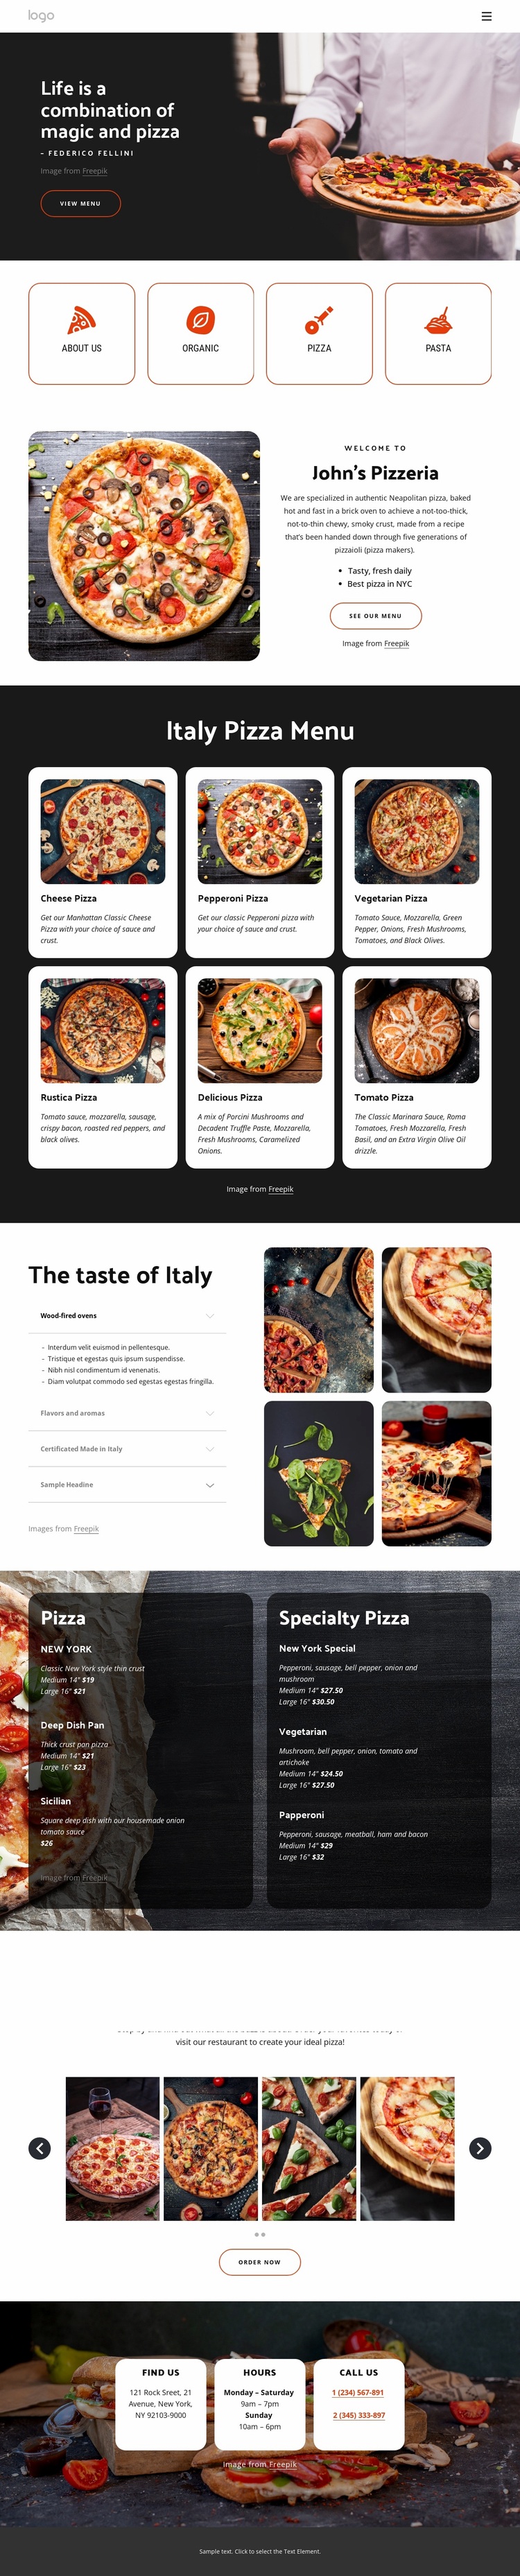 Family-friendly pizza restaurant Website Design